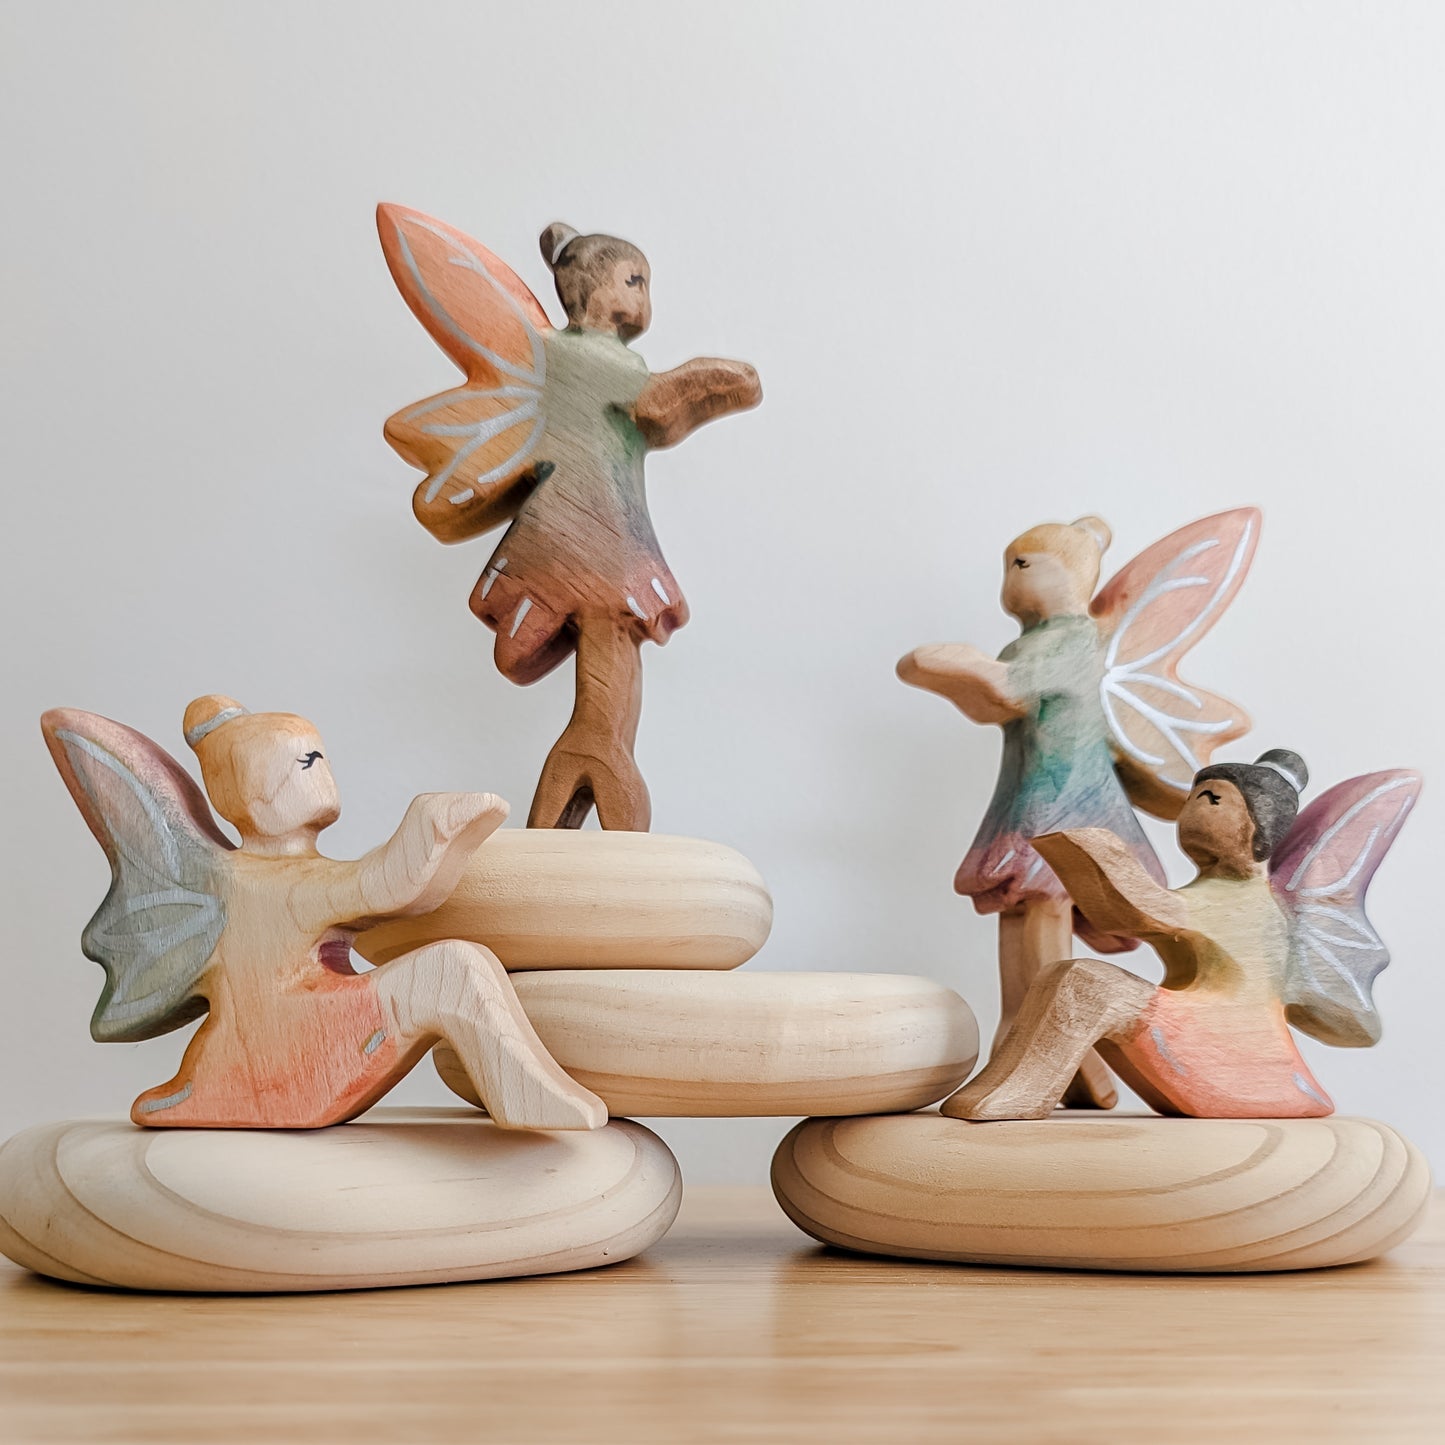 Rainbow Fairy Wooden Toy - Sitting